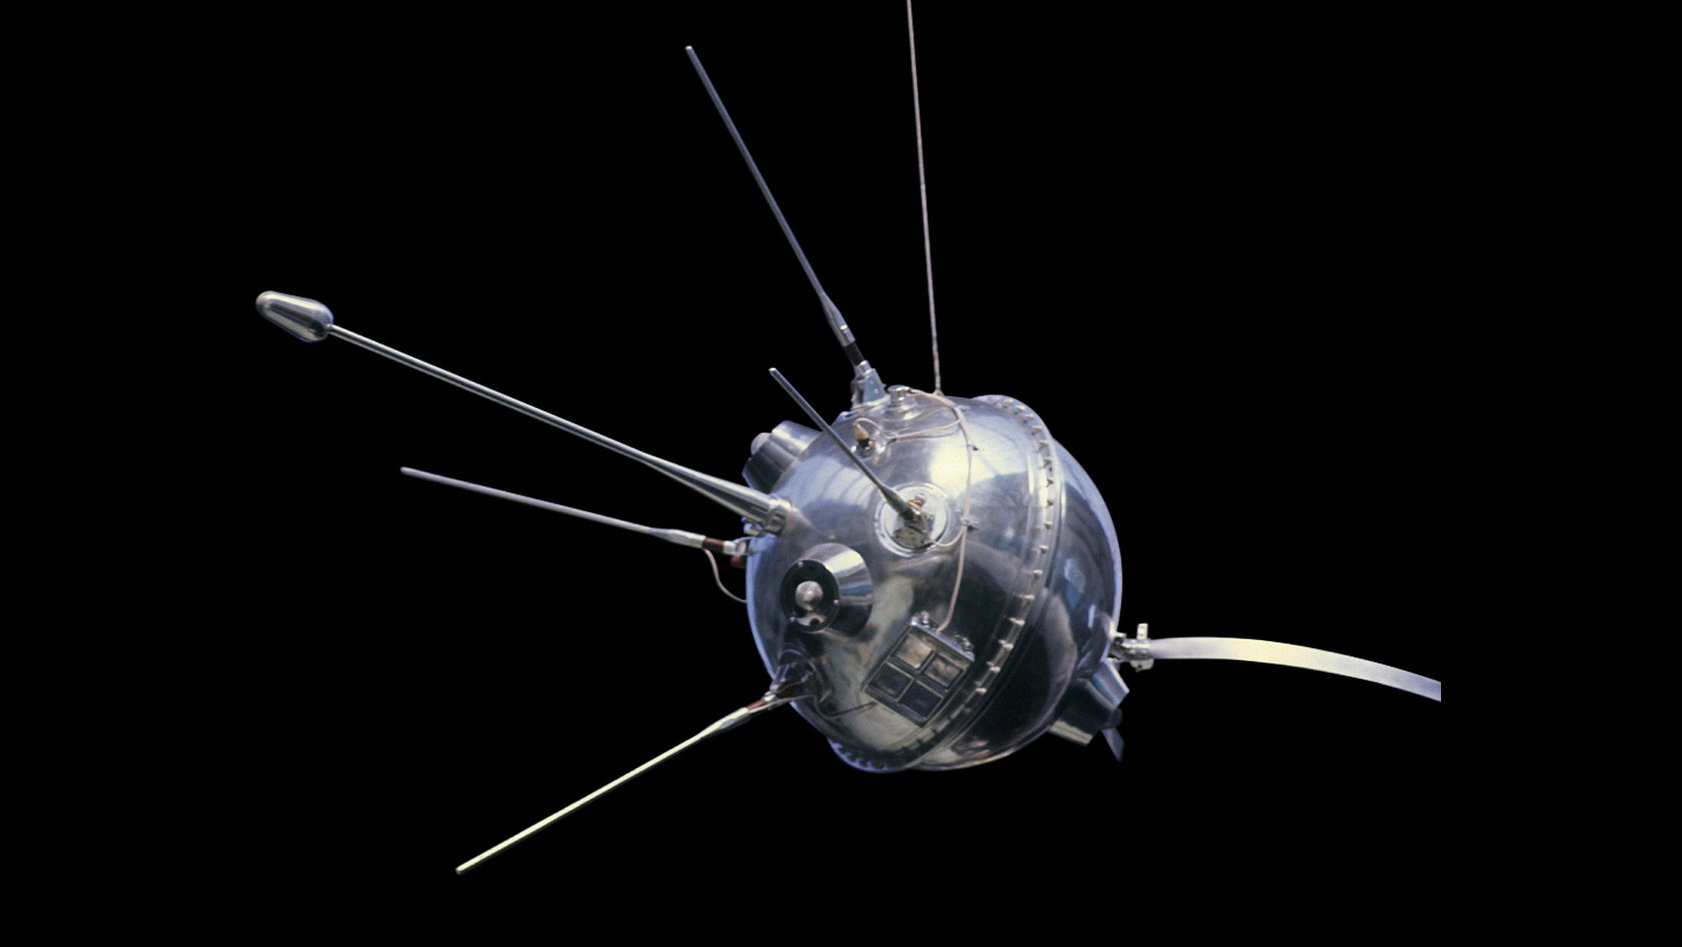 Луна-1 автоматическая межпланетная станция. Советская автоматическая межпланетная станция «Луна-1». Луна-2 автоматическая межпланетная станция. Луна 2 1959.